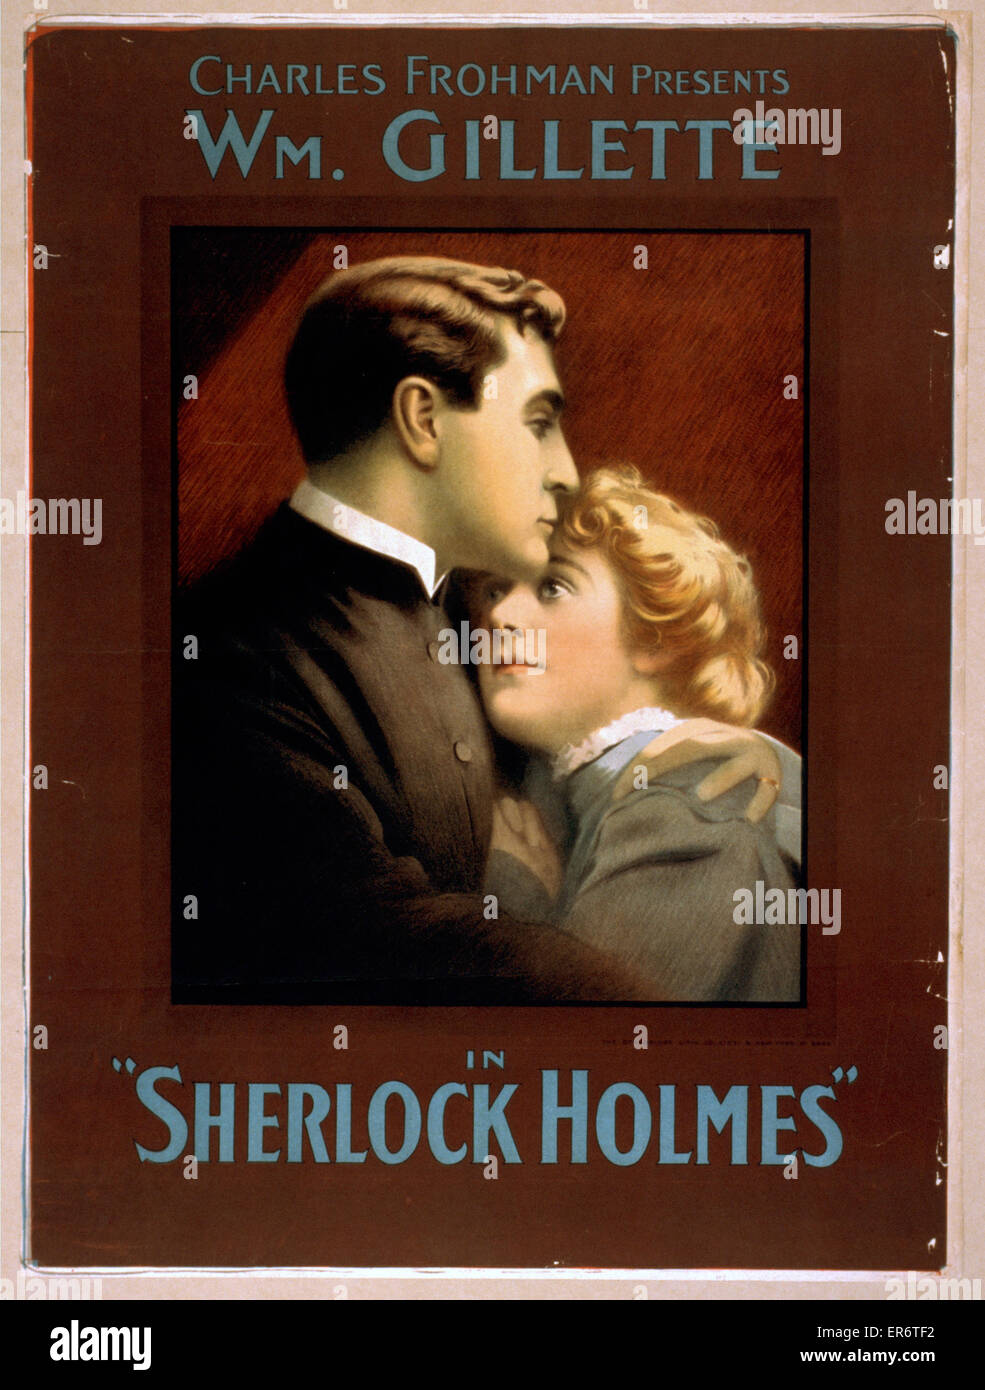 Charles Frohman présente William Gillette dans Sherlock Holmes Banque D'Images